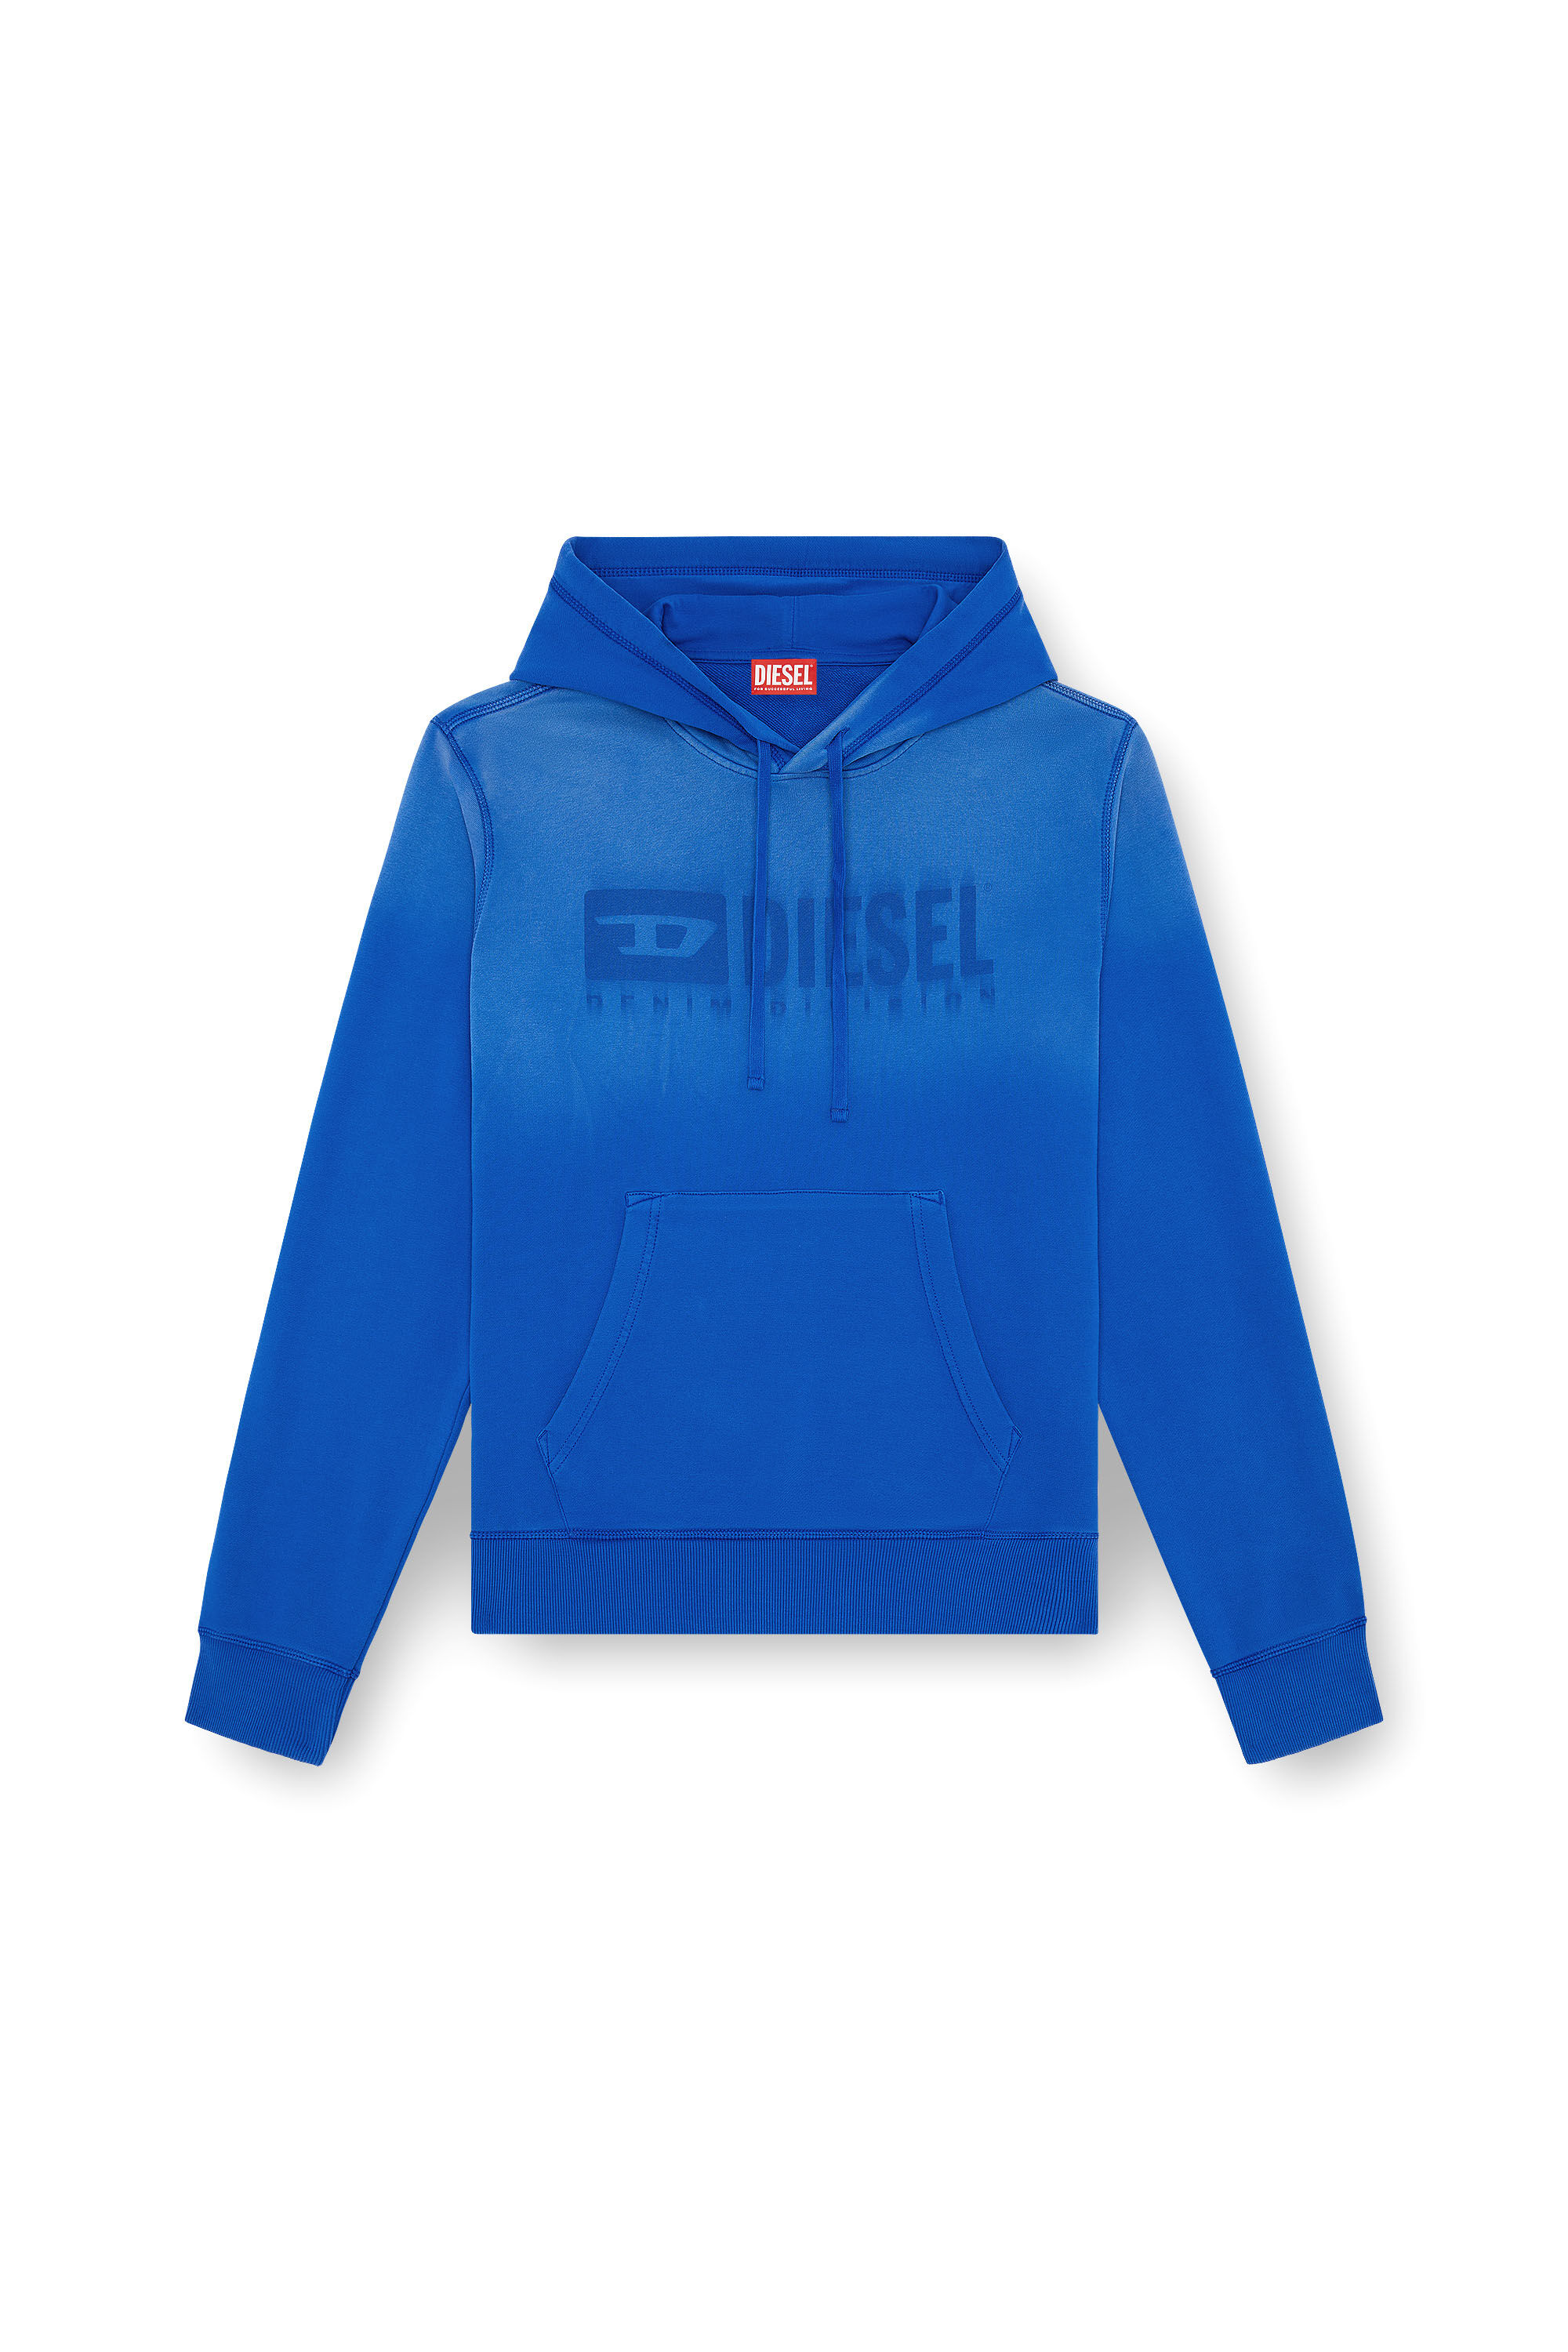 Diesel - S-GINN-HOOD-K44, Man Faded hoodie with Denim Division logo in Blue - Image 2